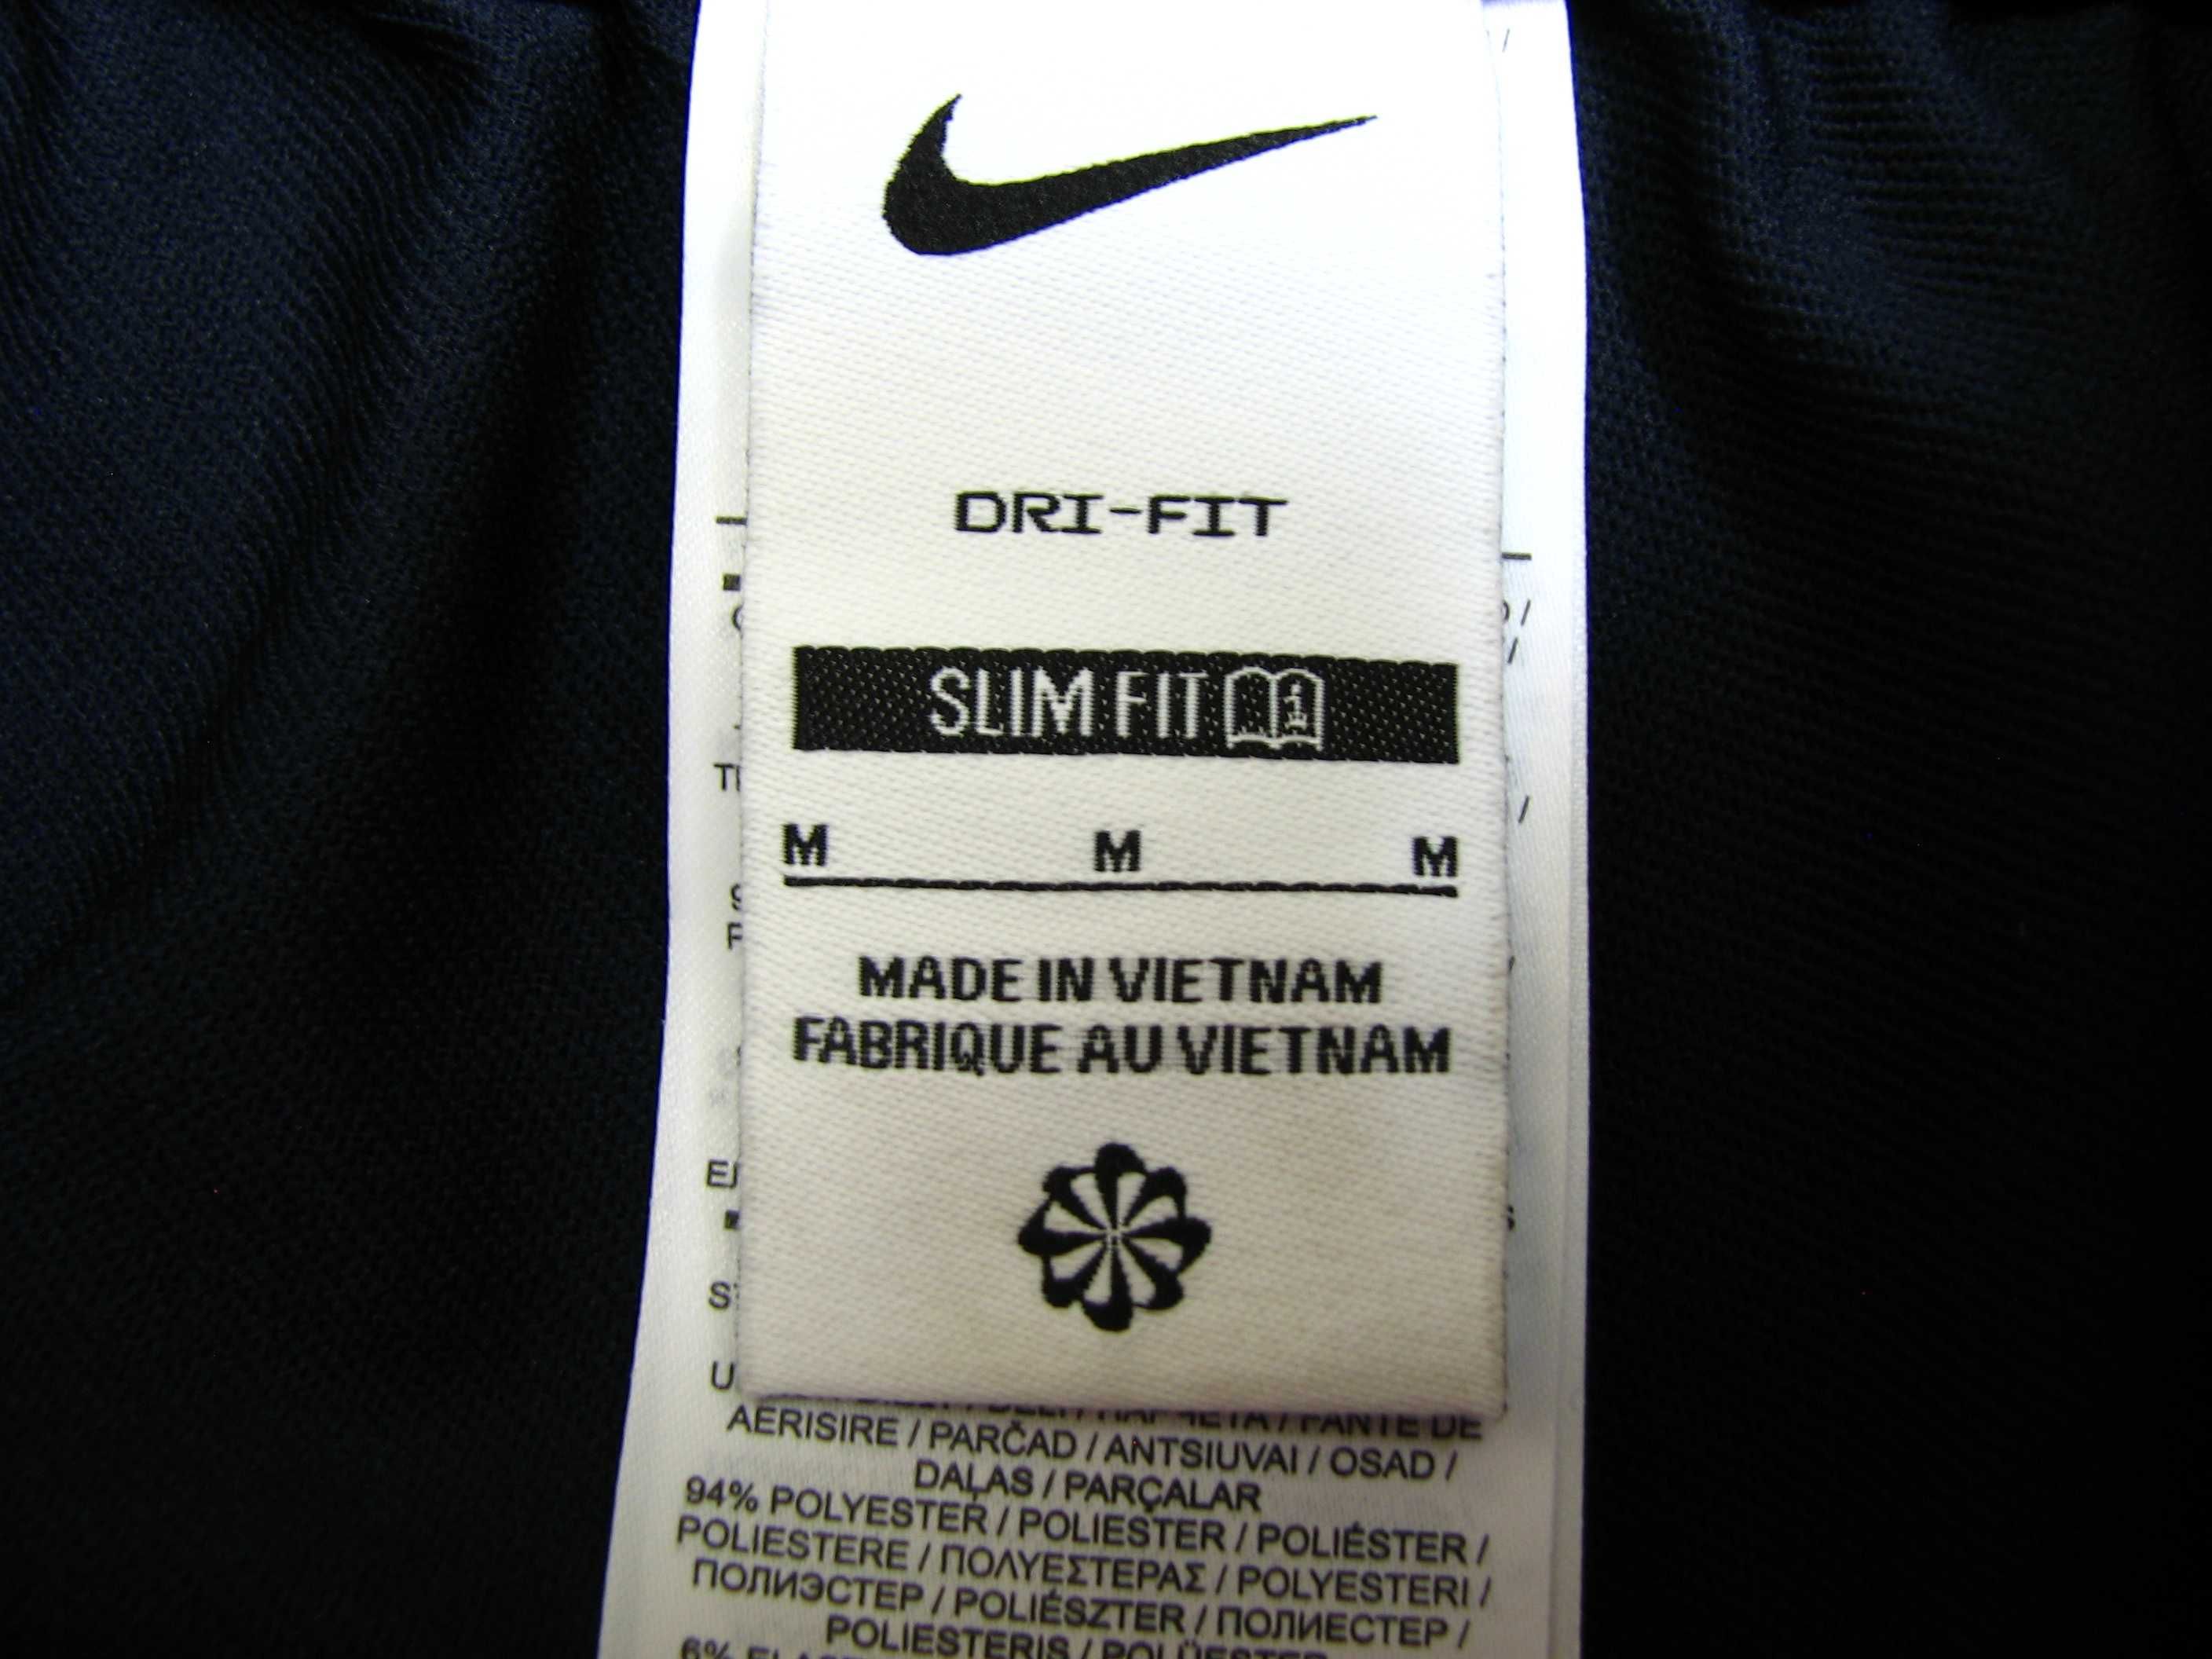 Spodnie piłkarskie męskie Nike Dri-FIT Strike